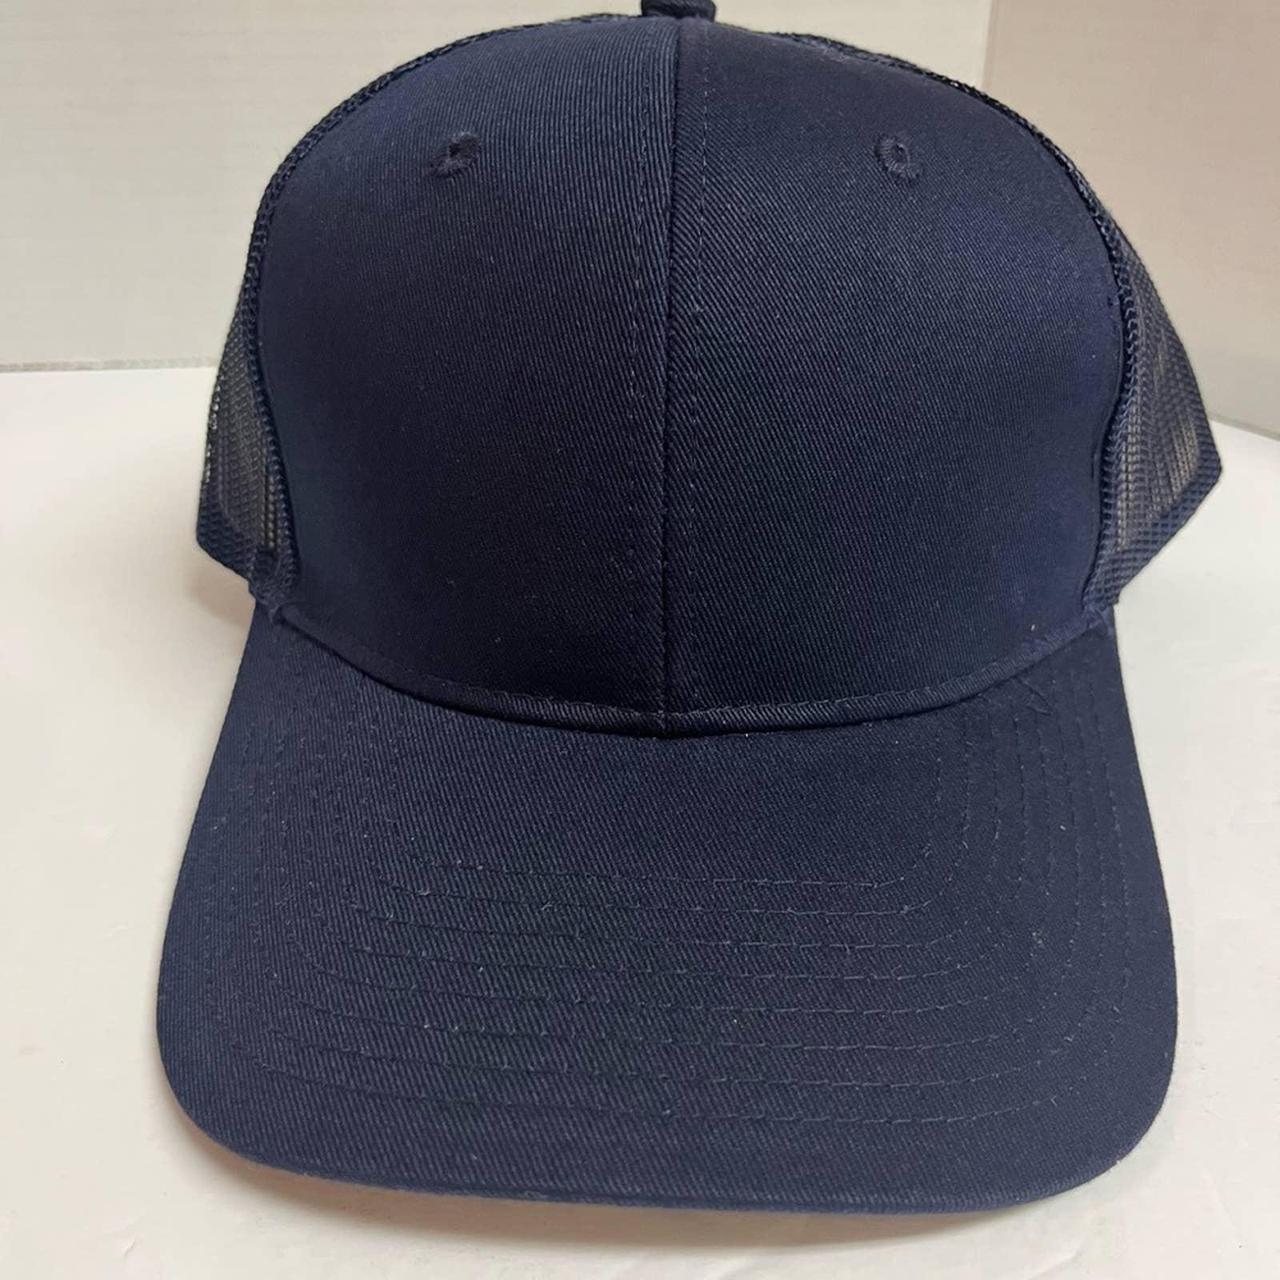  Men's Hats & Caps - Port Authority / Men's Hats & Caps